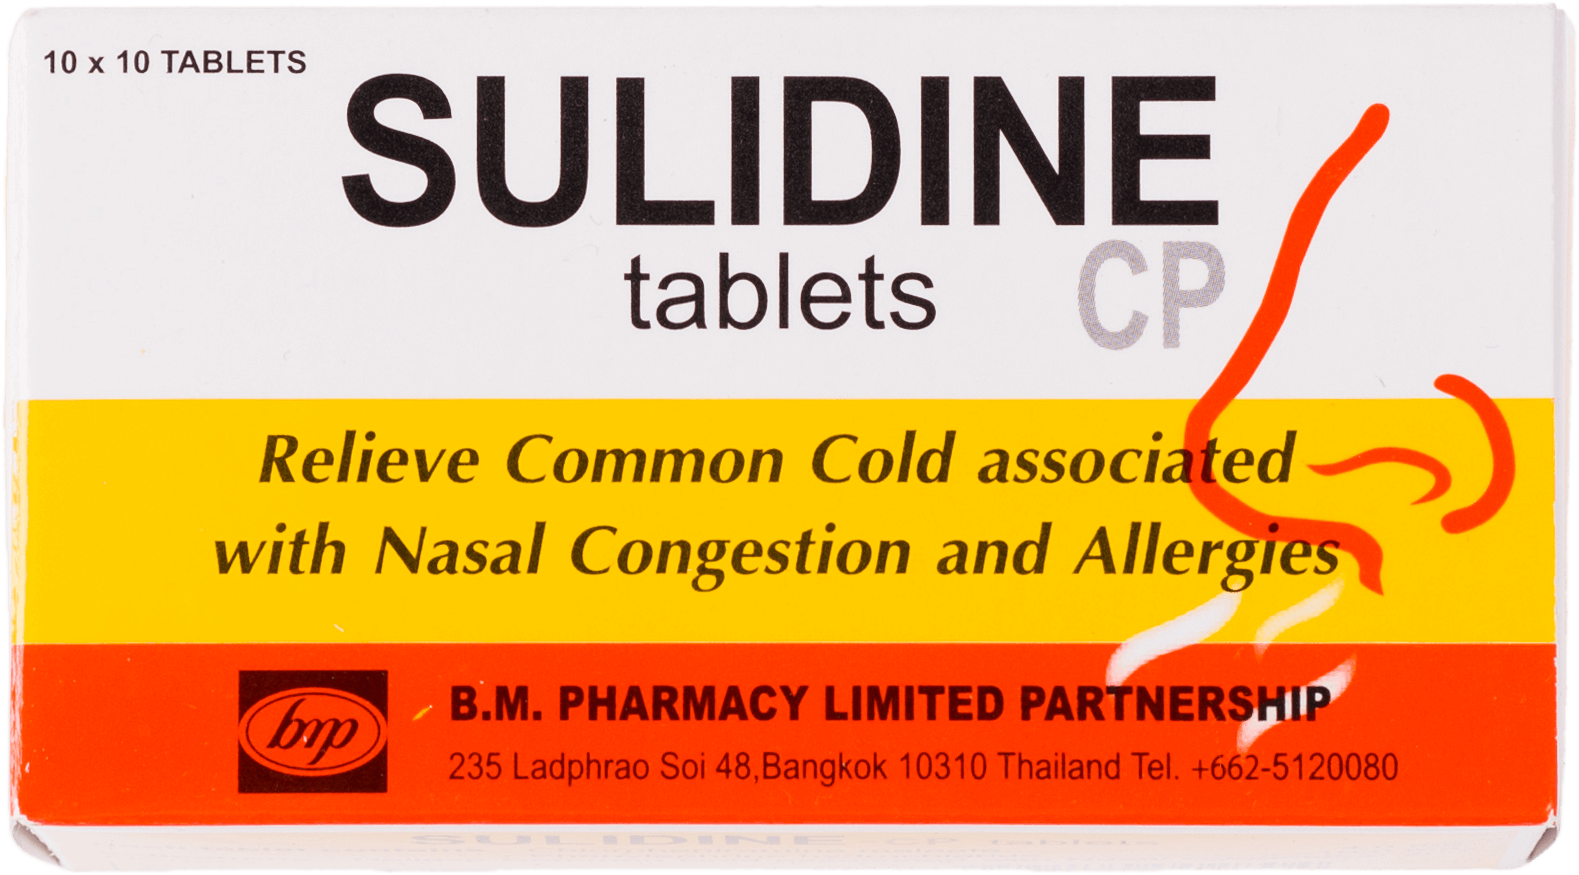 ยาเม็ดบรรเทาอากาศหวัด คัดจมูก แพ้อากาศ Sulidine CP